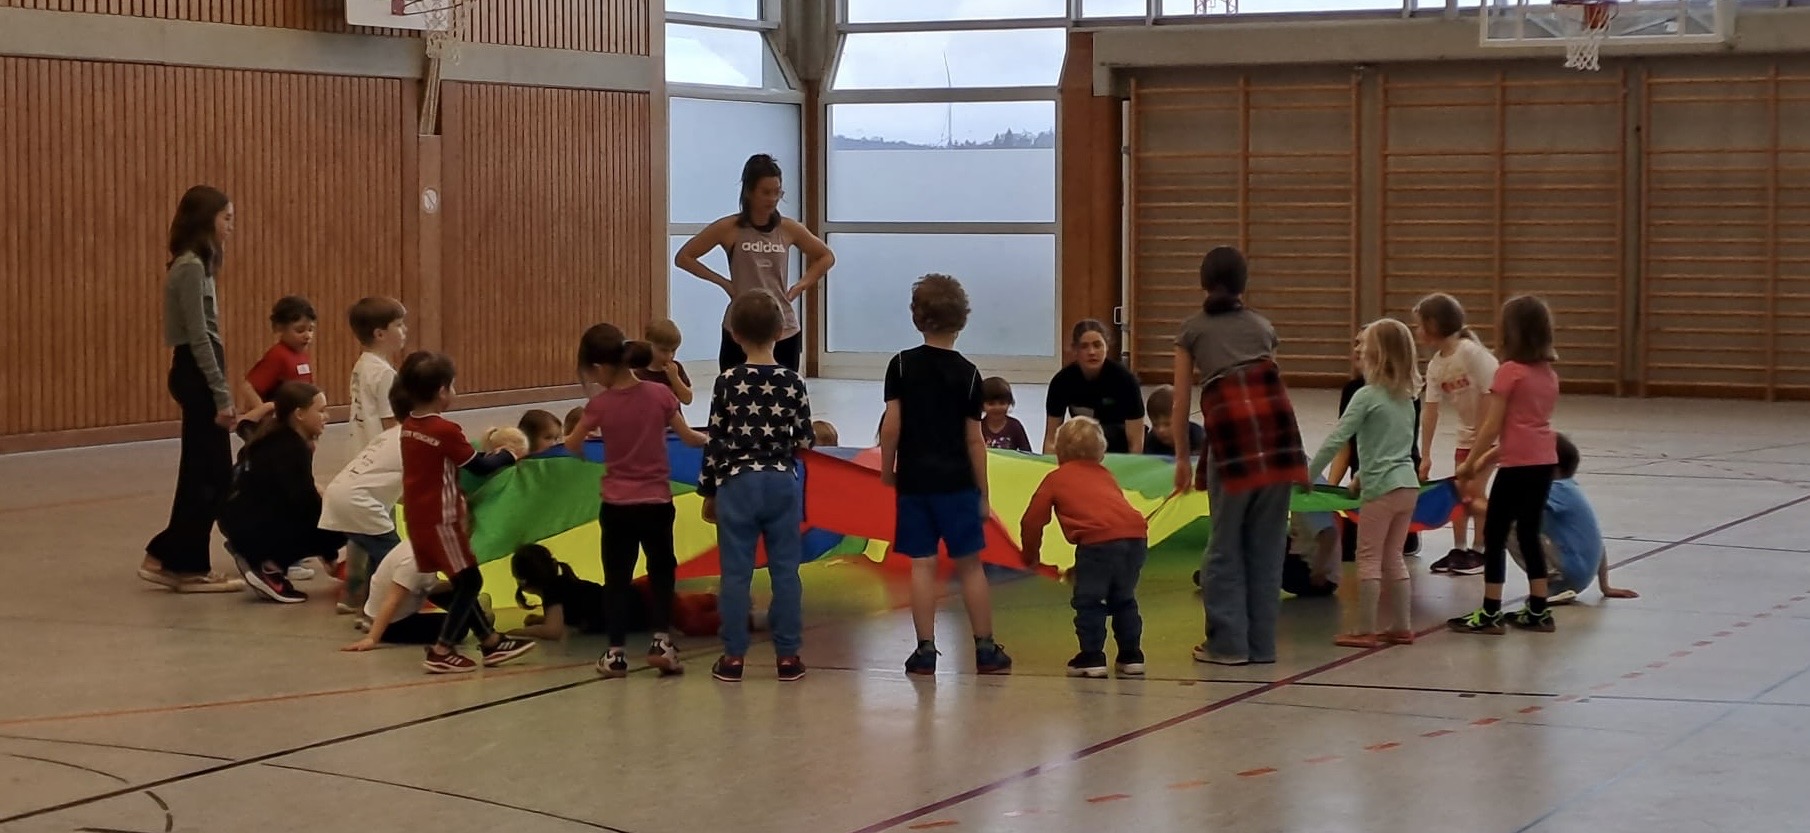 P-Seminar Sport als Volunteers beim integrativen Sportfest des TSV Ansbach - gemeinsam Spiel und Spaß!